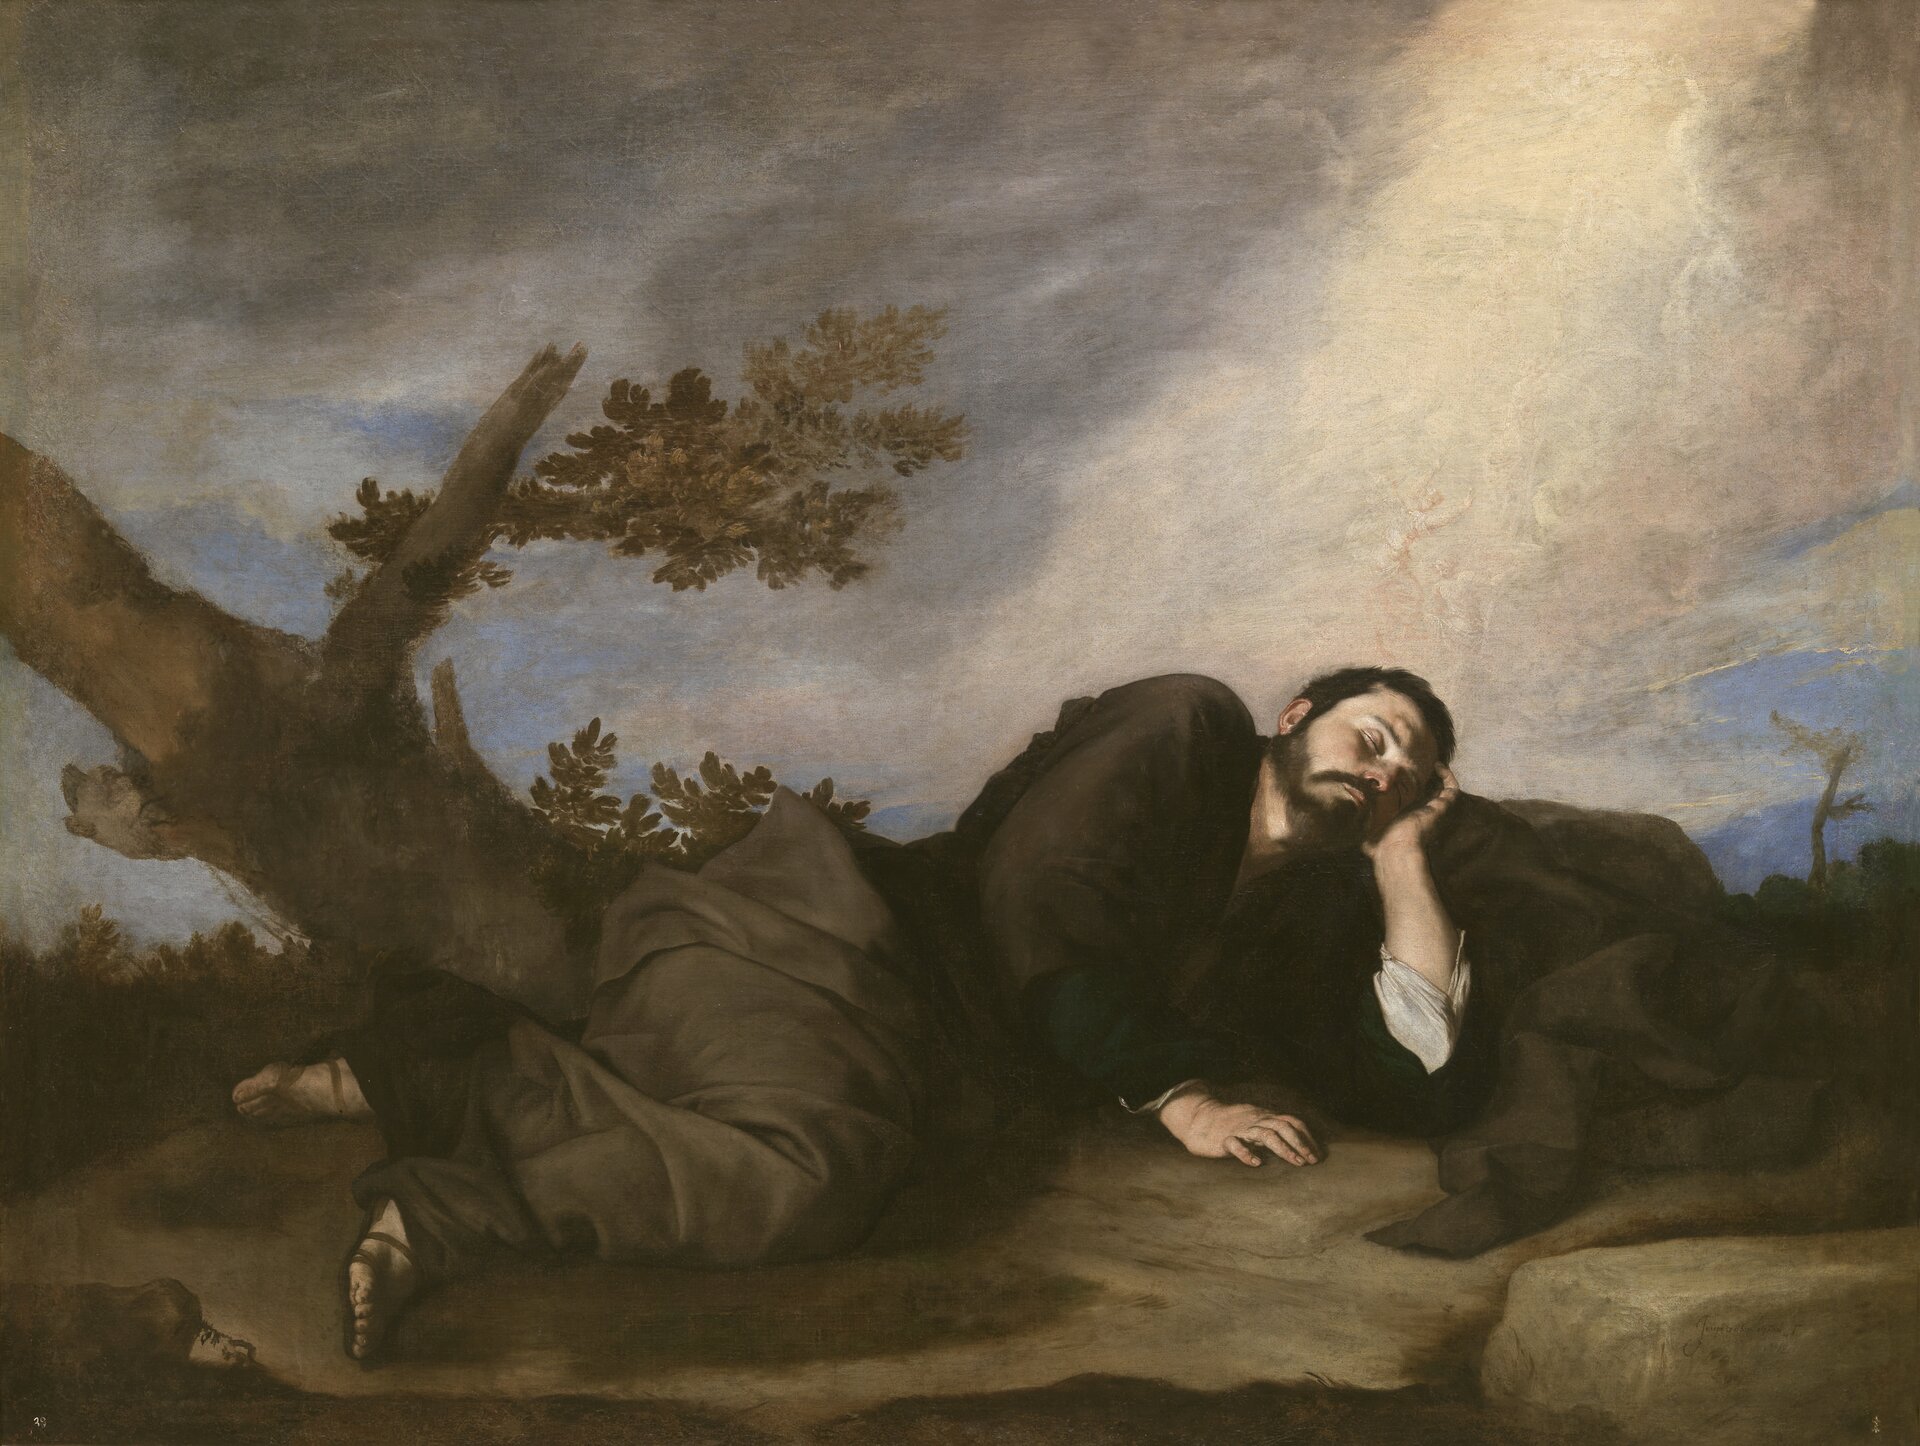 Ilustracja przedstawia obraz Jusepe de Ribera „Sen Jakuba”. Ukazuje śpiącego mężczyznę. Jakub leży na ziemi z głową na kamieniu, wspartą o ramię. Jego szaty kontrastują z zajmującym połowę obrazu zachmurzonym niebem. Z lewej strony, wśród kamienistego pustkowia, z suchego konaru wyrasta kwitnąca gałąź i kieruje się ku niebu.